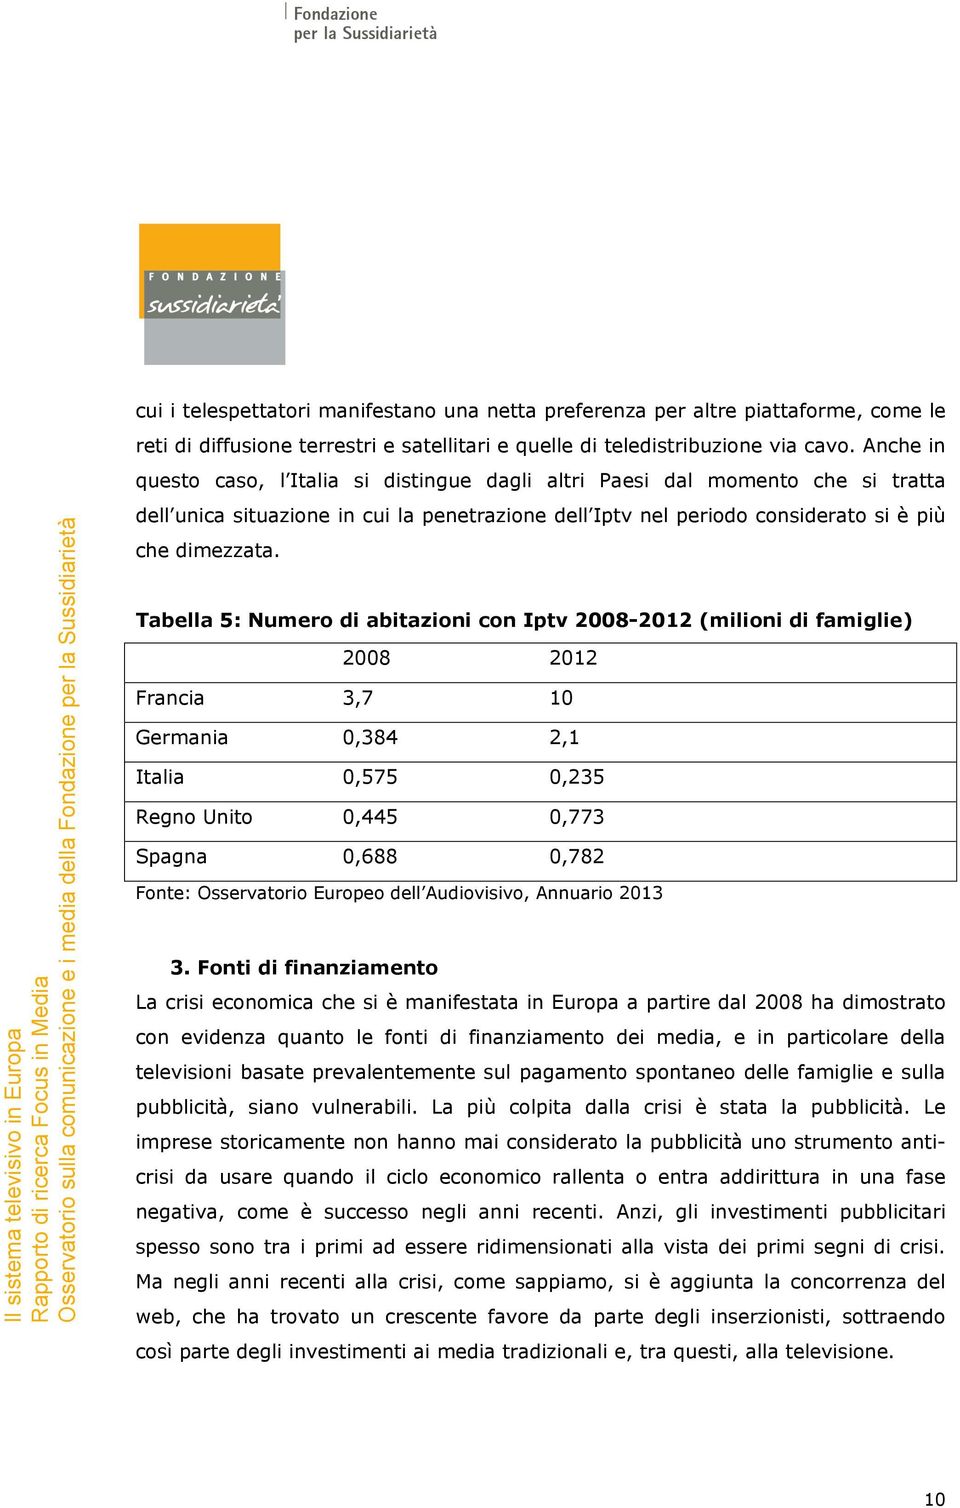 Tabella 5: Numero di abitazioni con Iptv 2008-2012 (milioni di famiglie) 2008 2012 Francia 3,7 10 Germania 0,384 2,1 Italia 0,575 0,235 Regno Unito 0,445 0,773 Spagna 0,688 0,782 Fonte: Osservatorio